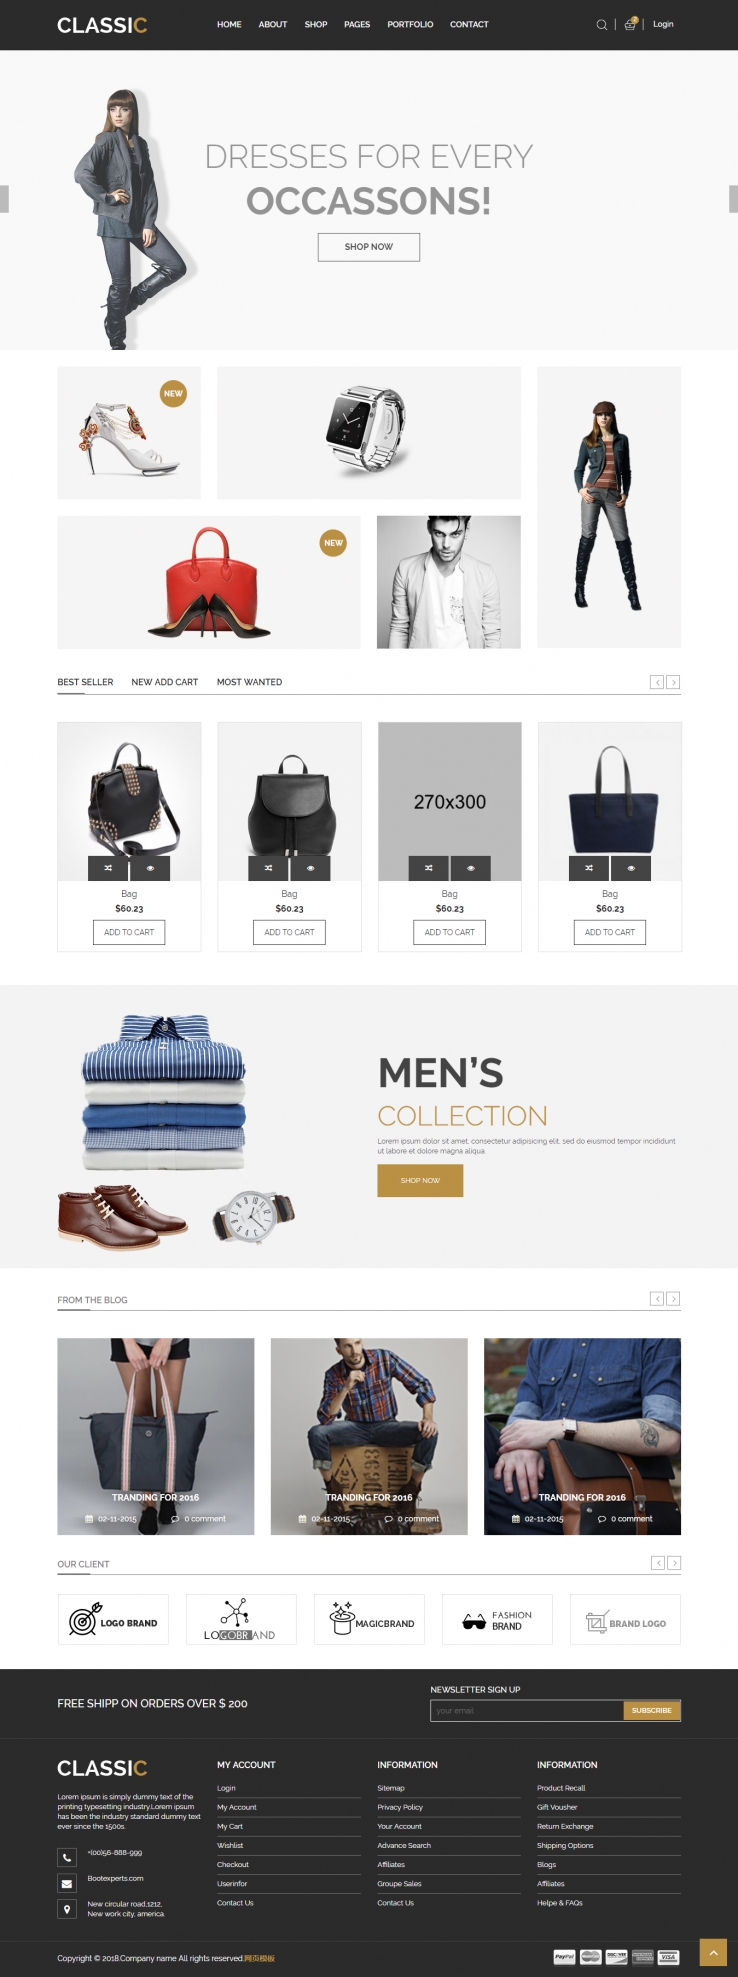 棕色欧美风格的时尚服装箱包整站网站源码下载